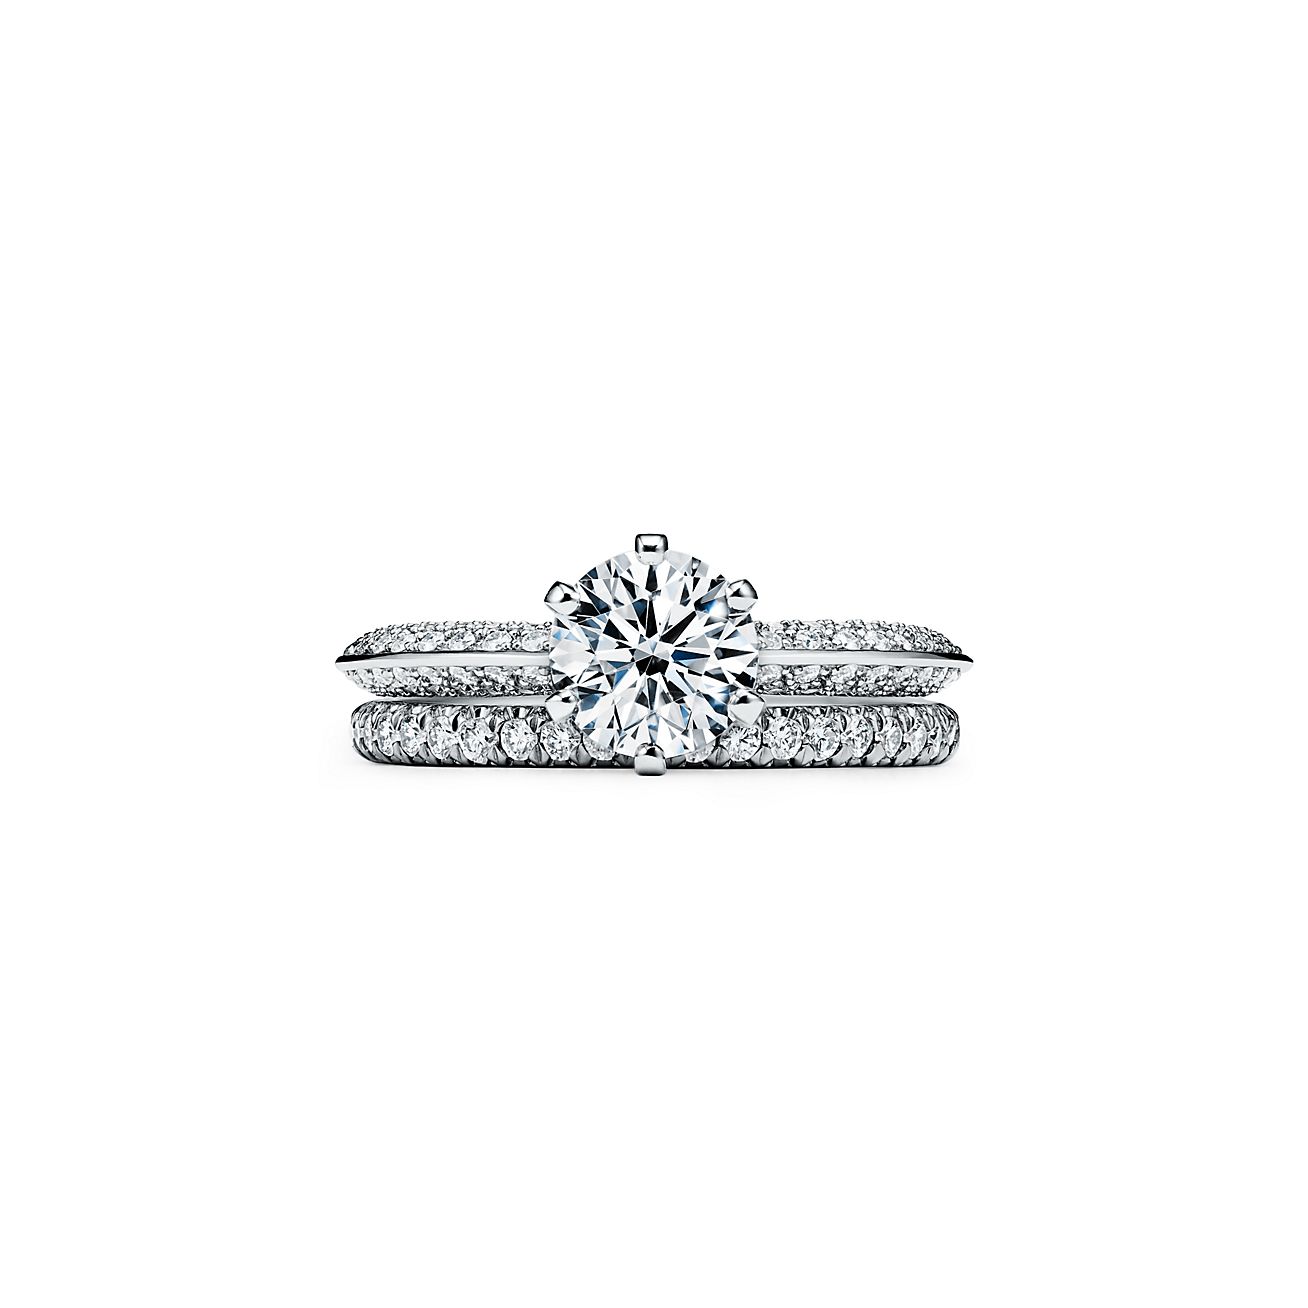 美しい商品価格 ティファニー ダイヤモンド リング 特注生産:119904円 リング(指輪)